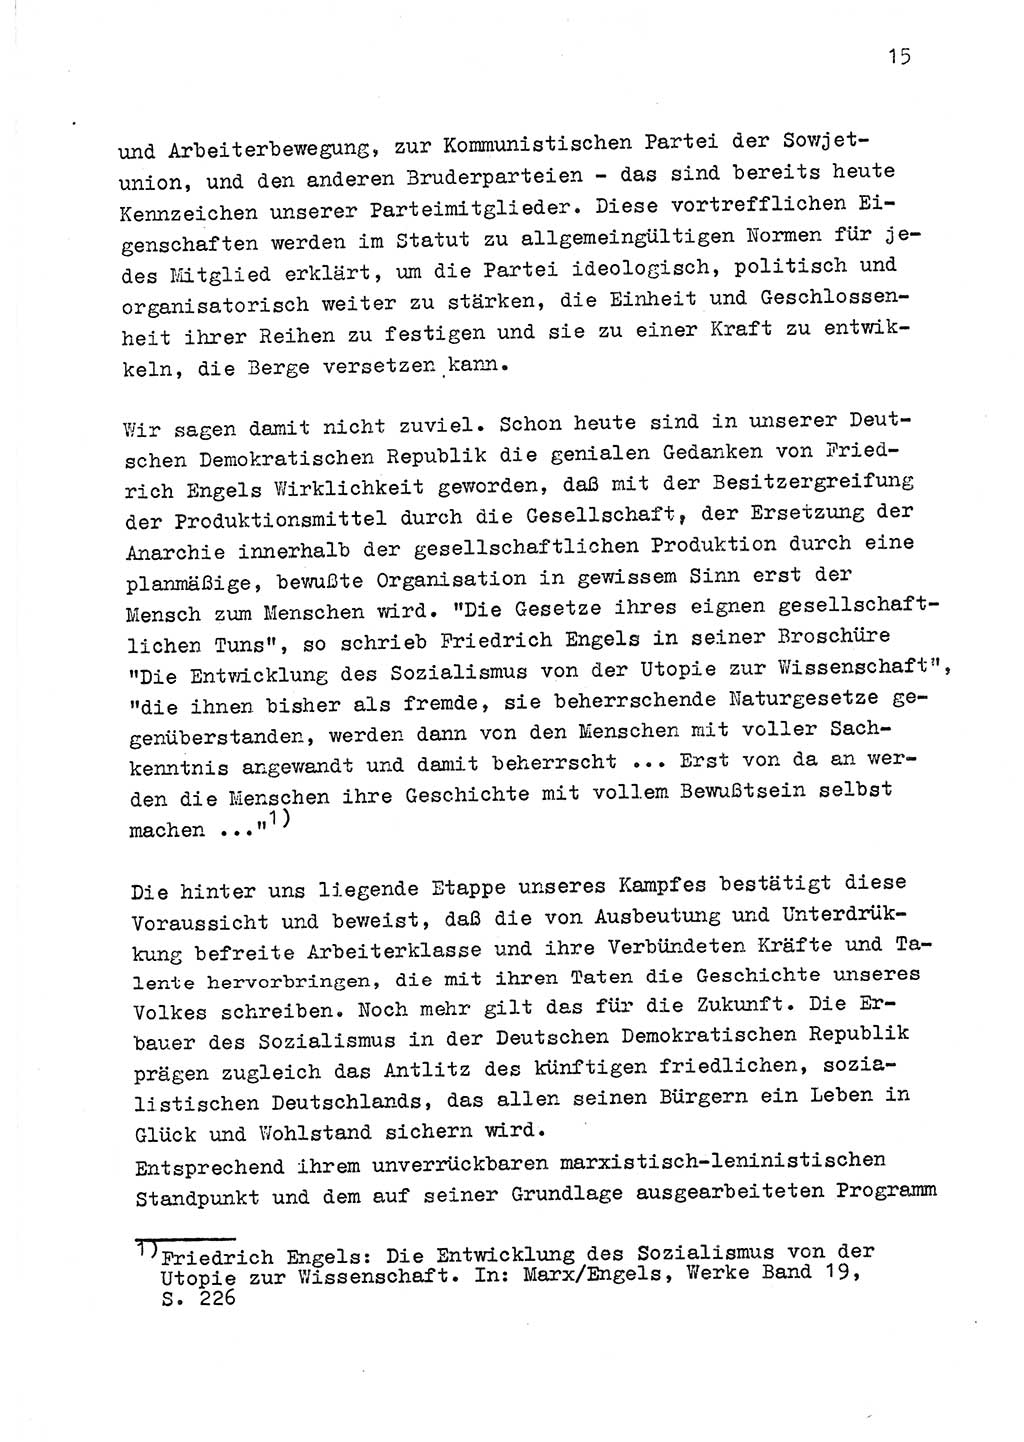 Zu Fragen der Parteiarbeit [Sozialistische Einheitspartei Deutschlands (SED) Deutsche Demokratische Republik (DDR)] 1979, Seite 15 (Fr. PA SED DDR 1979, S. 15)